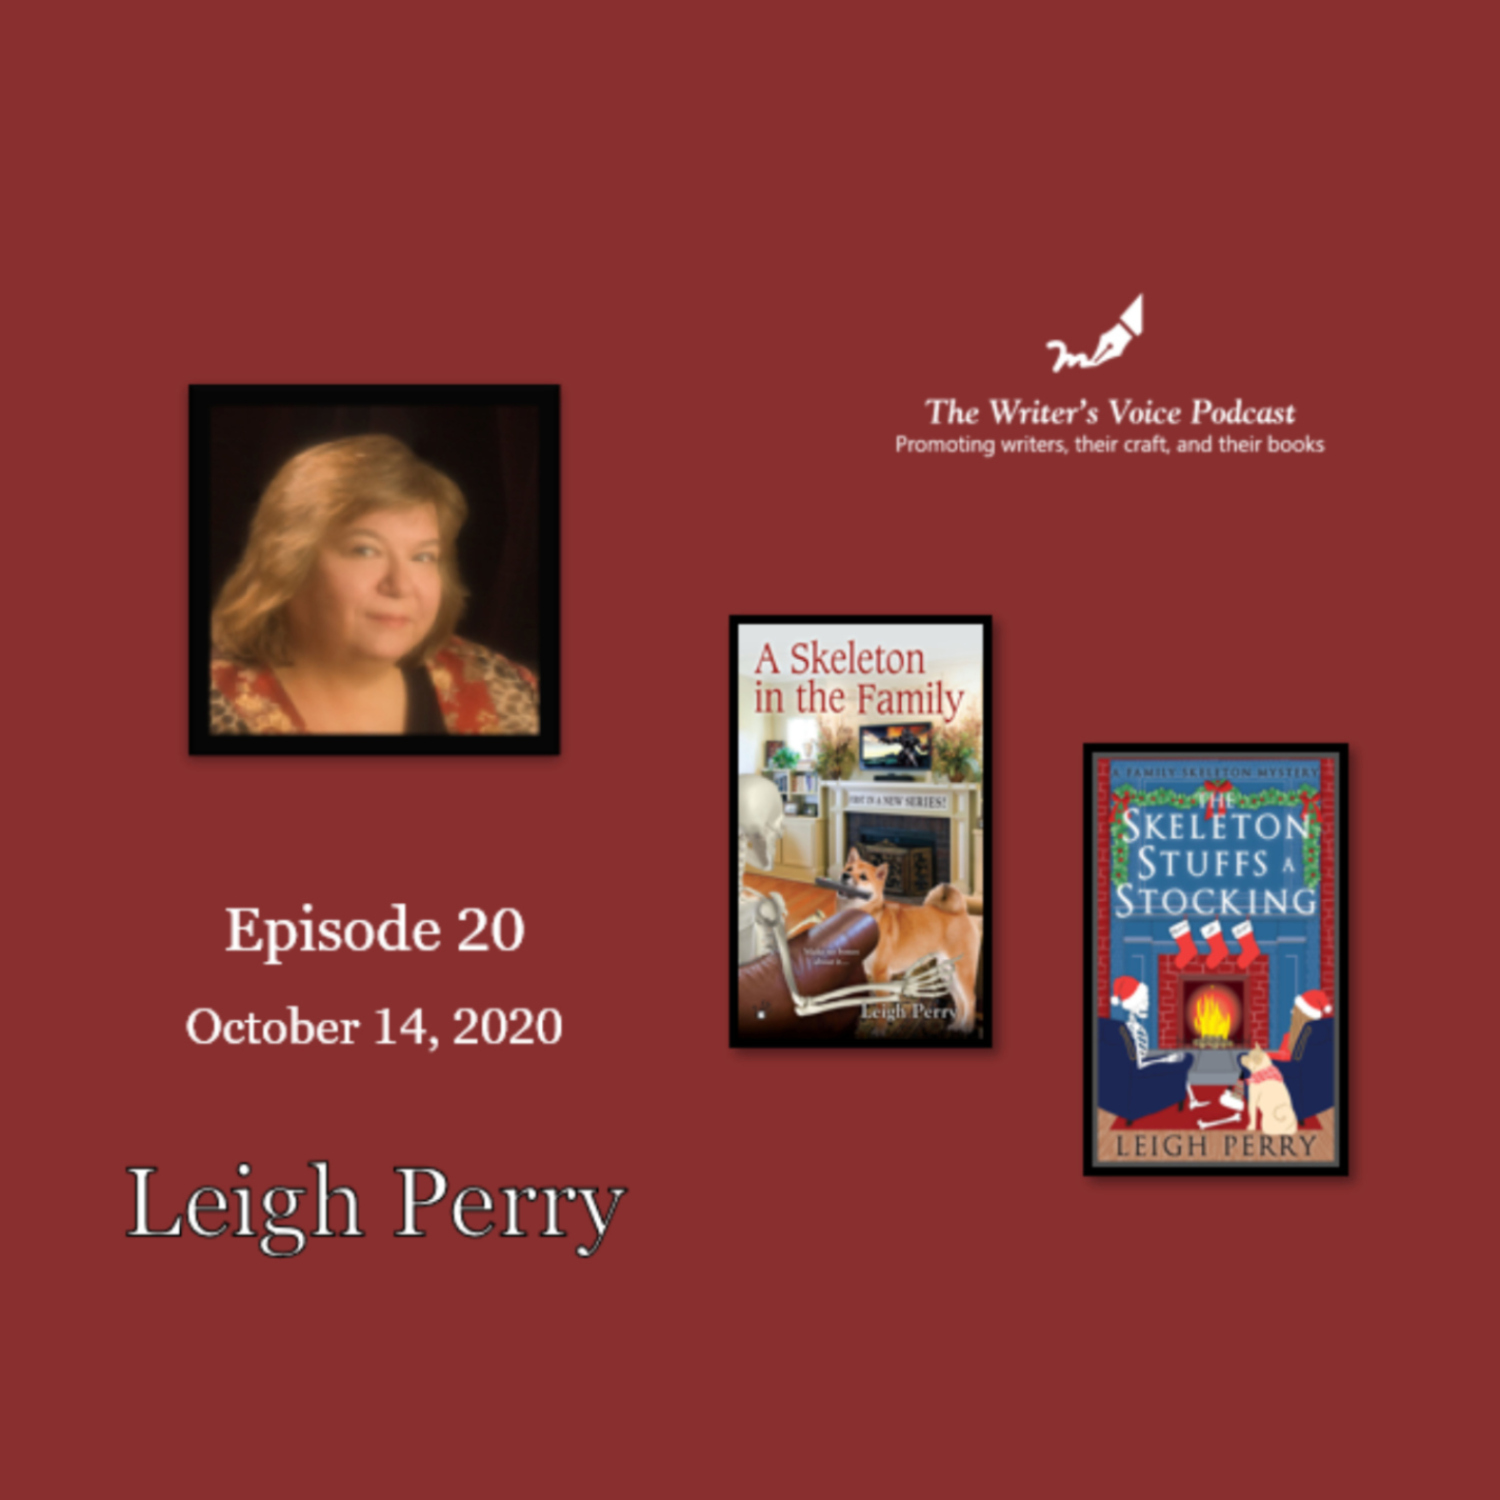 Episode 21: Leigh Perry